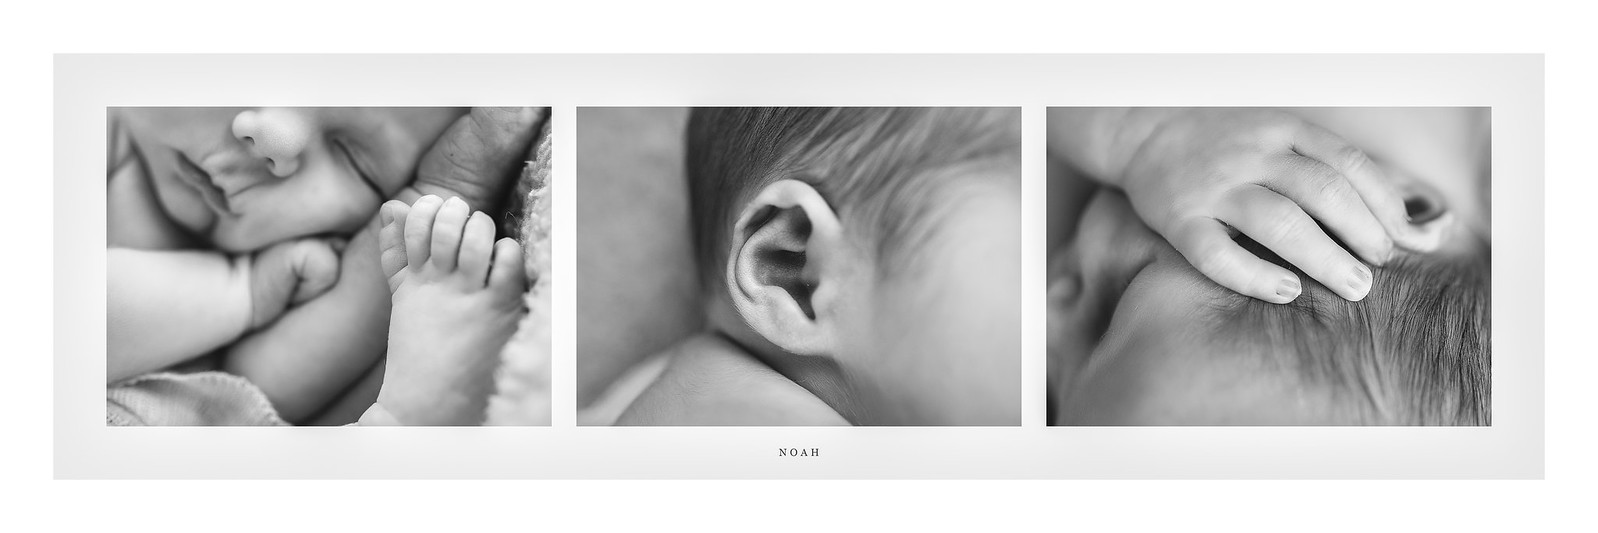 newborn photo detail collage